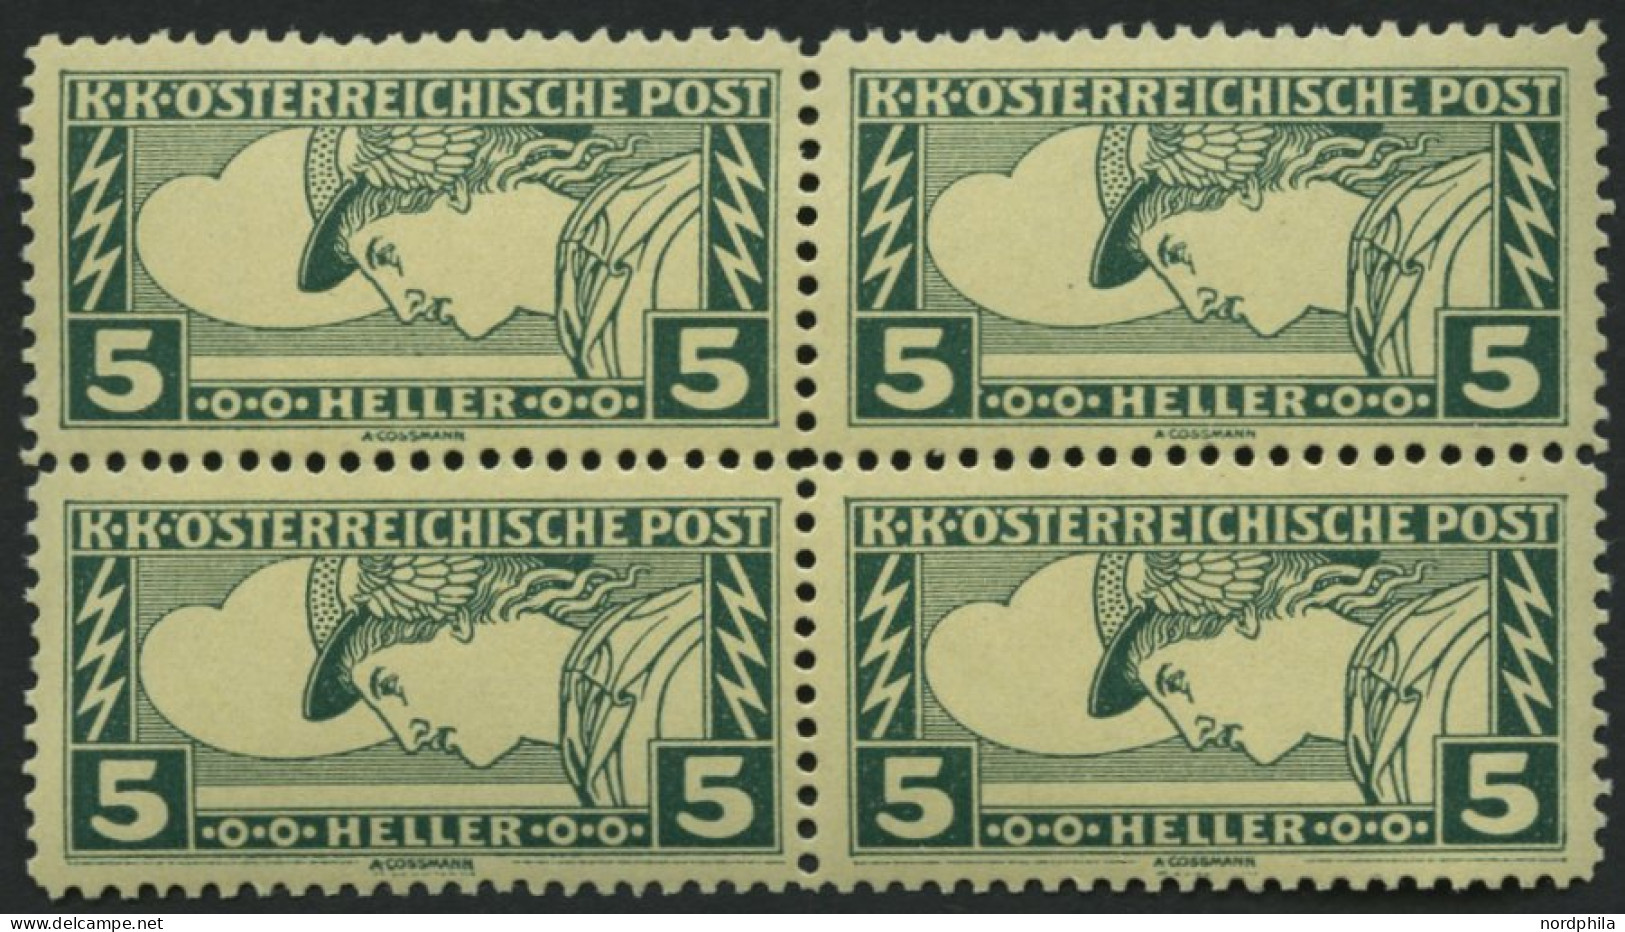 ÖSTERREICH 219A VB **, *, 1917, 2 H. Eilmarke, Gezähnt L 121/2, Im Viererblock, Die Beiden Unteren Postfrischen Marken M - Used Stamps